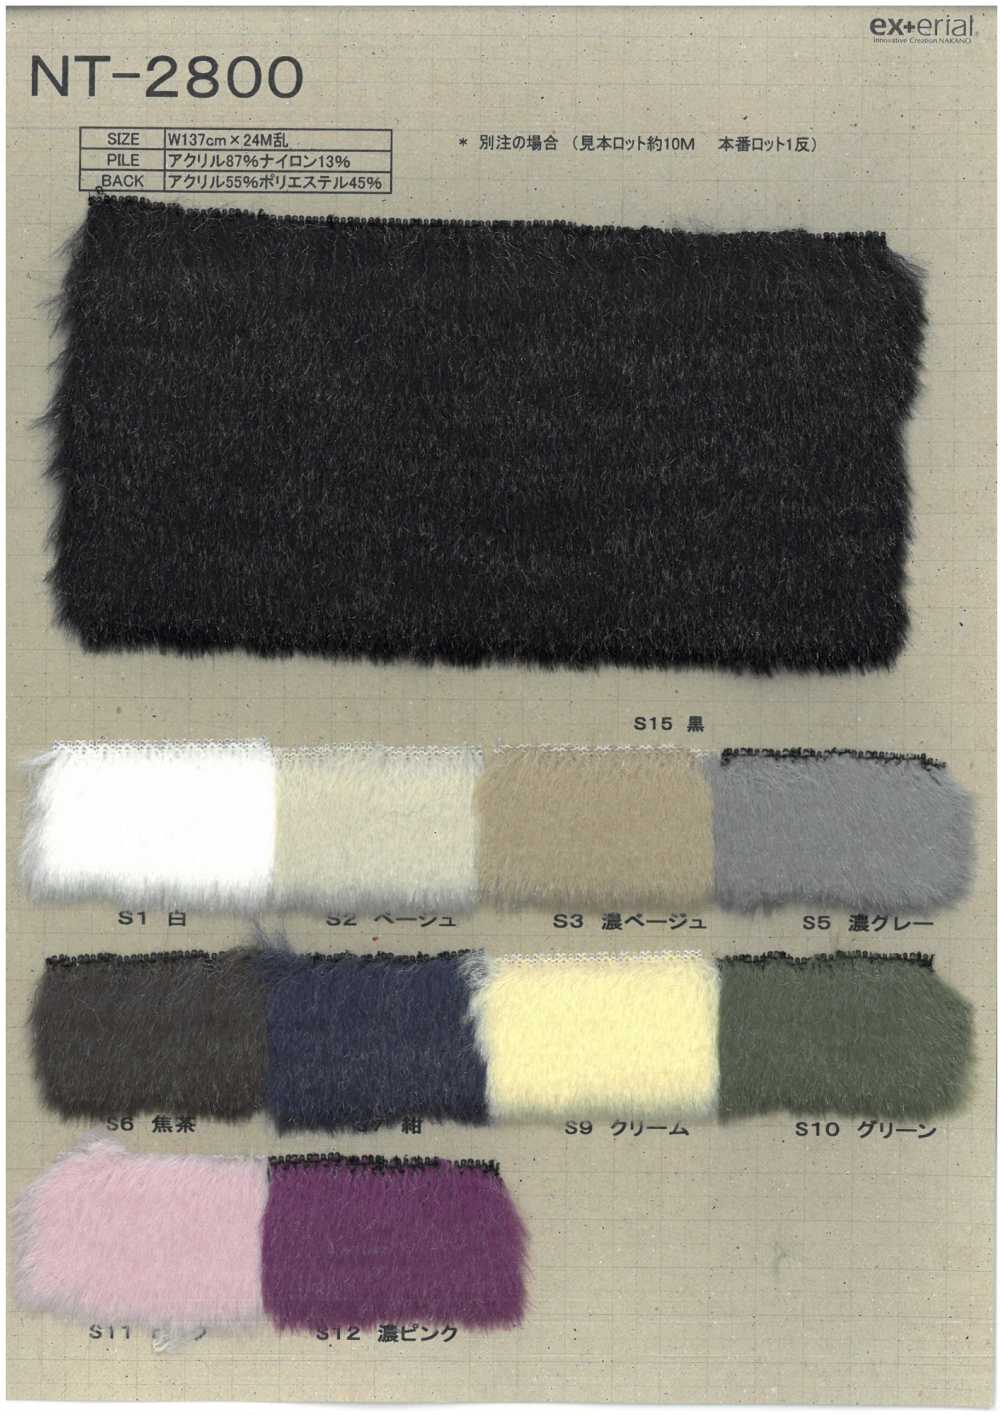 NT-2800 Pelliccia Artigianale [Shearling Argentato][Tessile / Tessuto] Industria Delle Magliette A Nakano